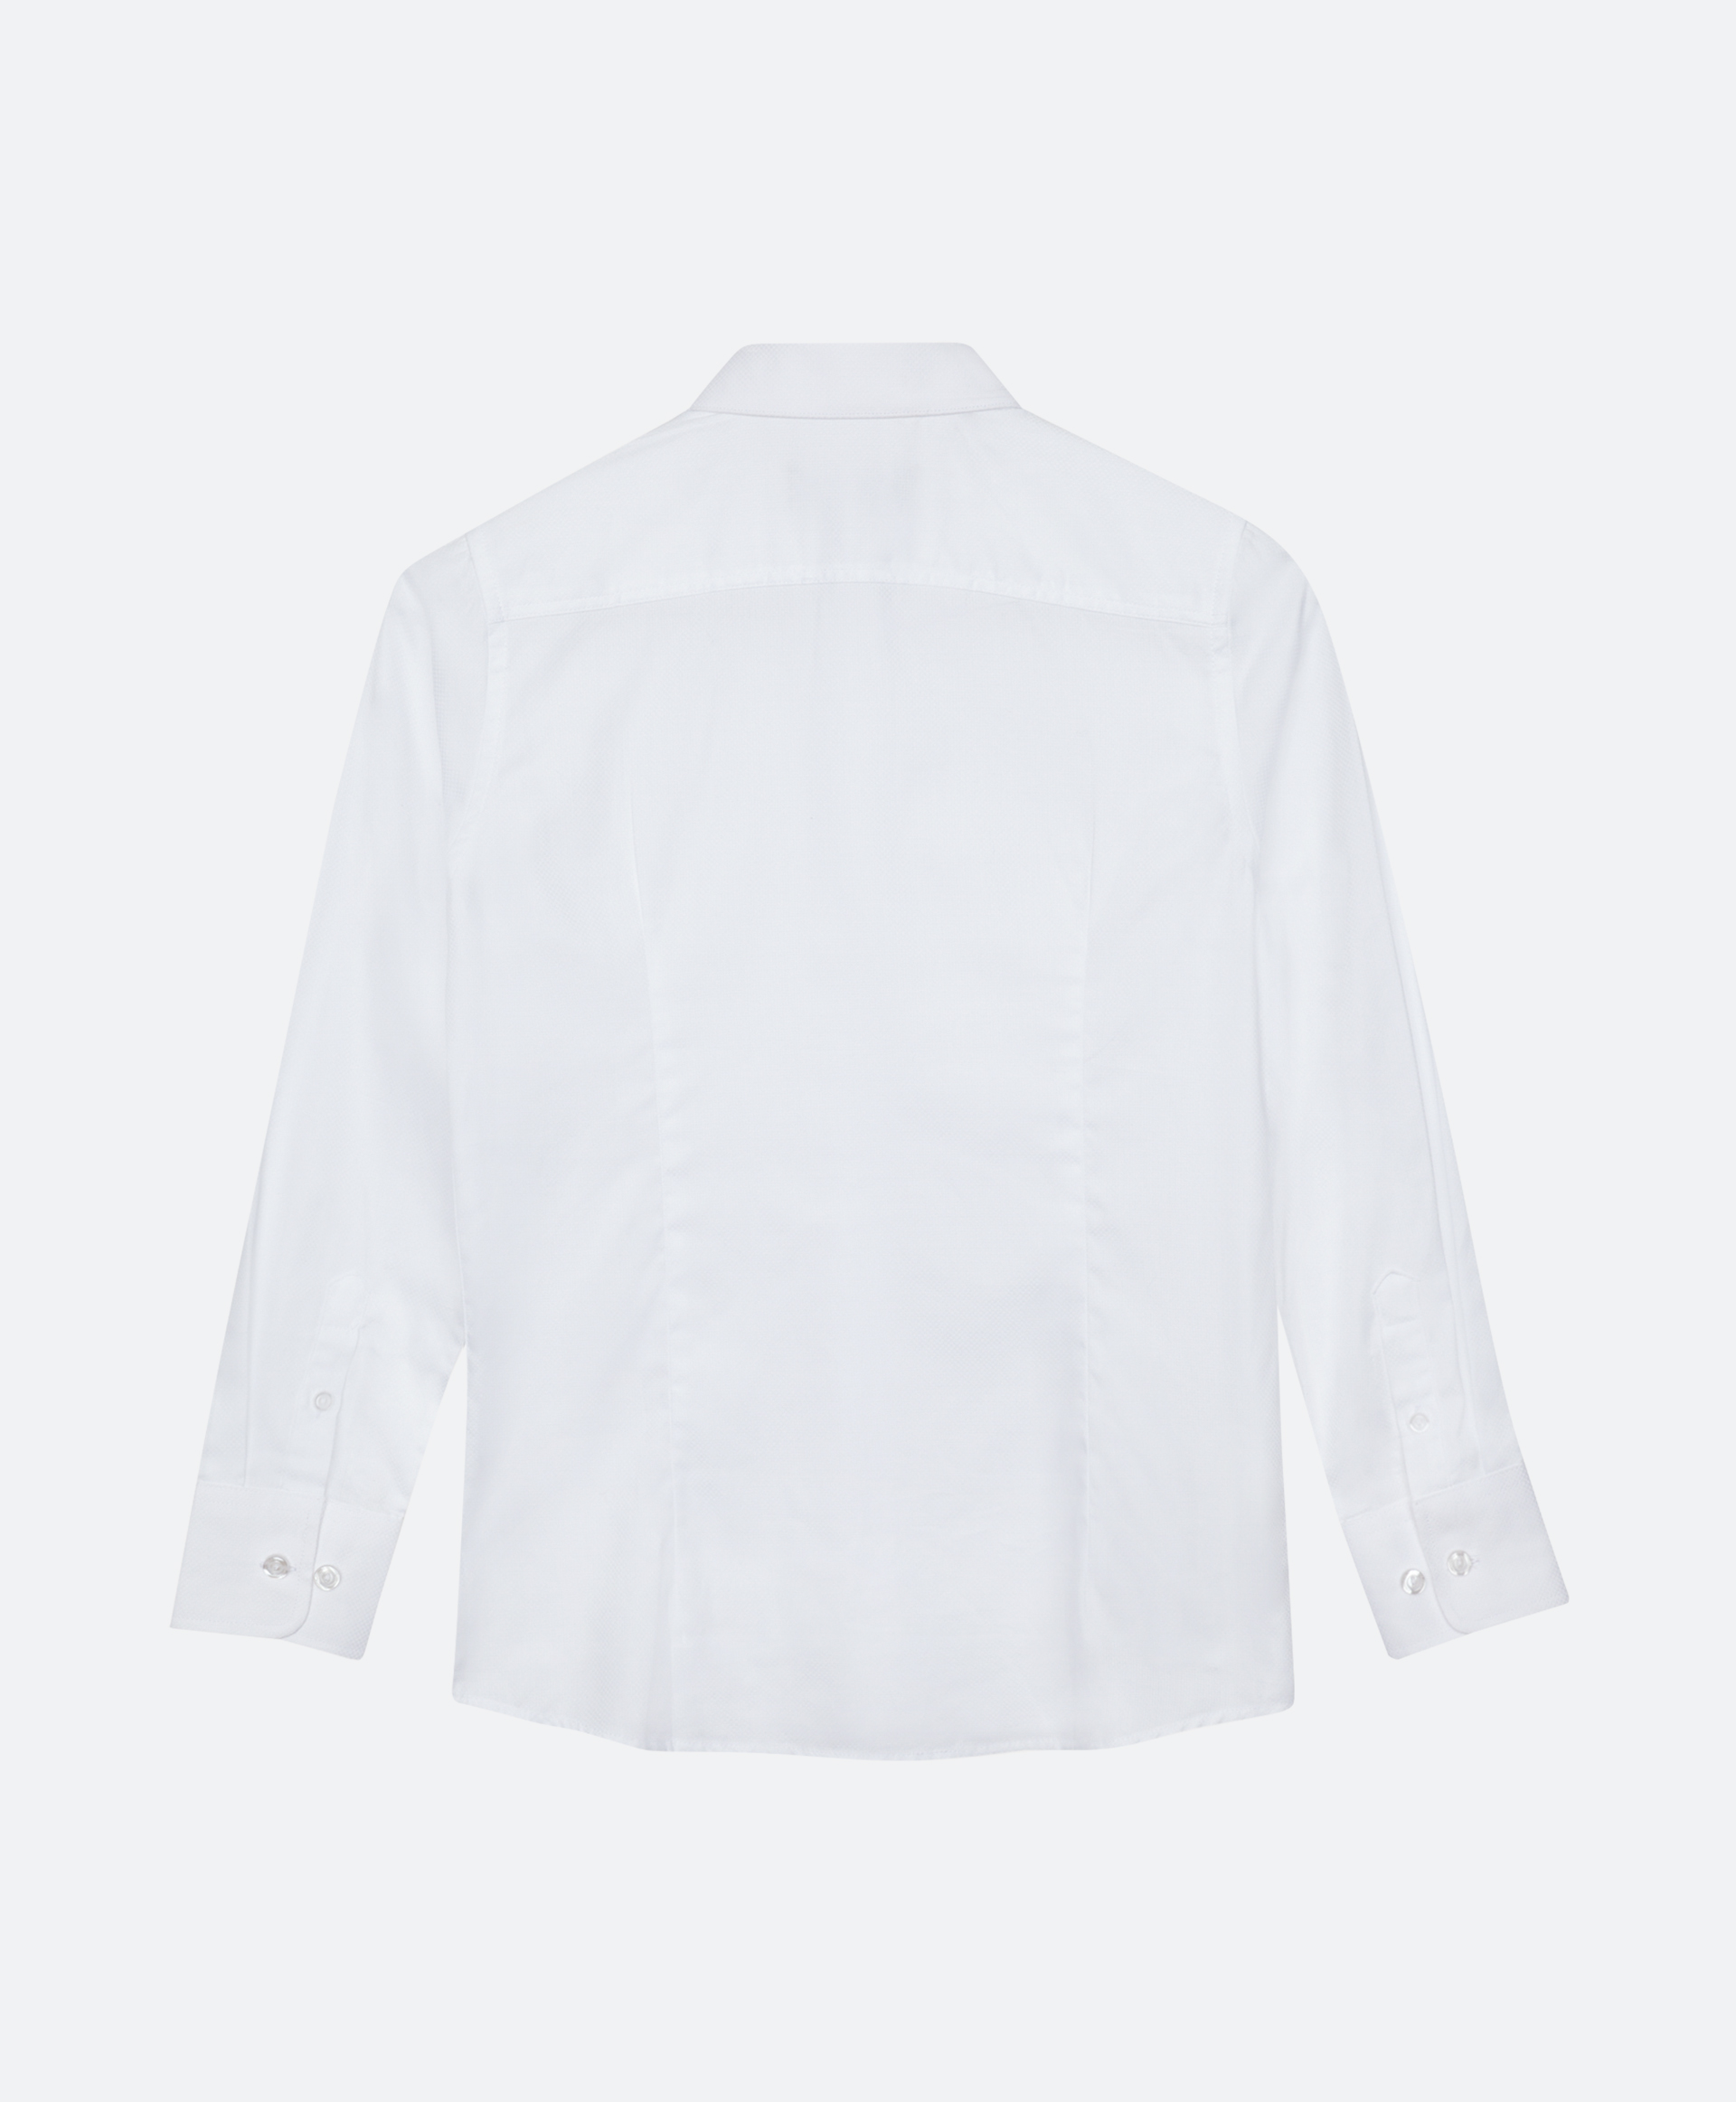 Сорочка белая с длинным рукавом Gulliver 200GSBC2302, размер 134*68*32, цвет белый - фото 5